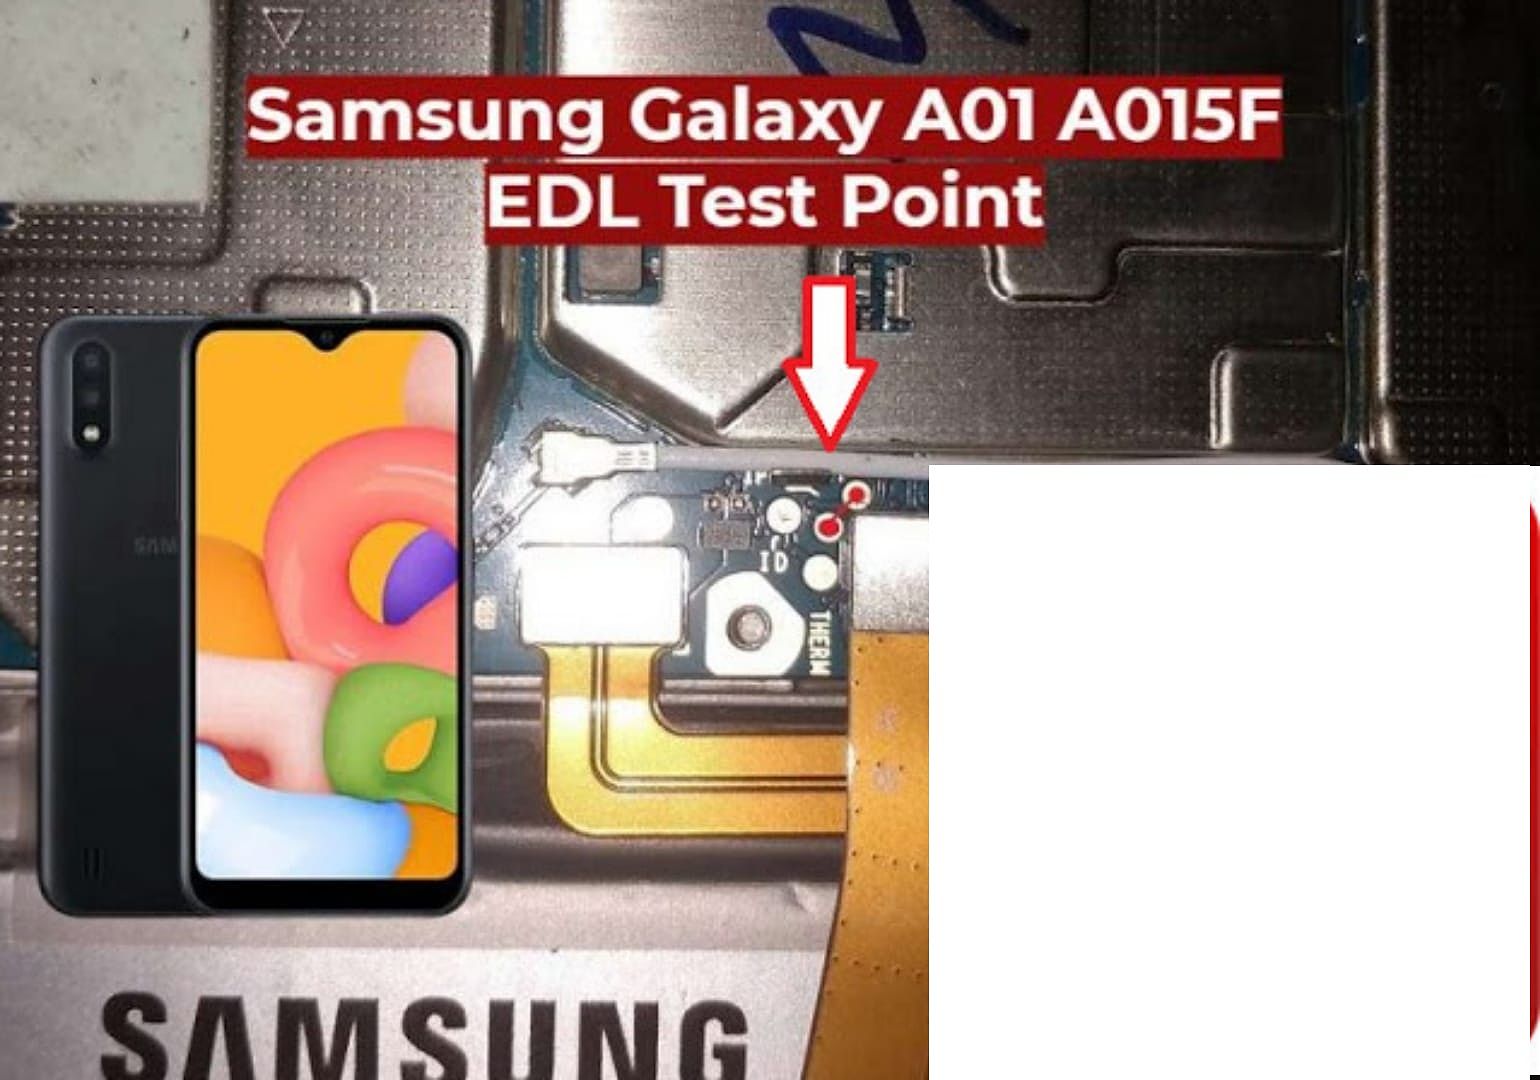 Samsung Galaxy A01 A015F Test ?async&amprand05413186554884177